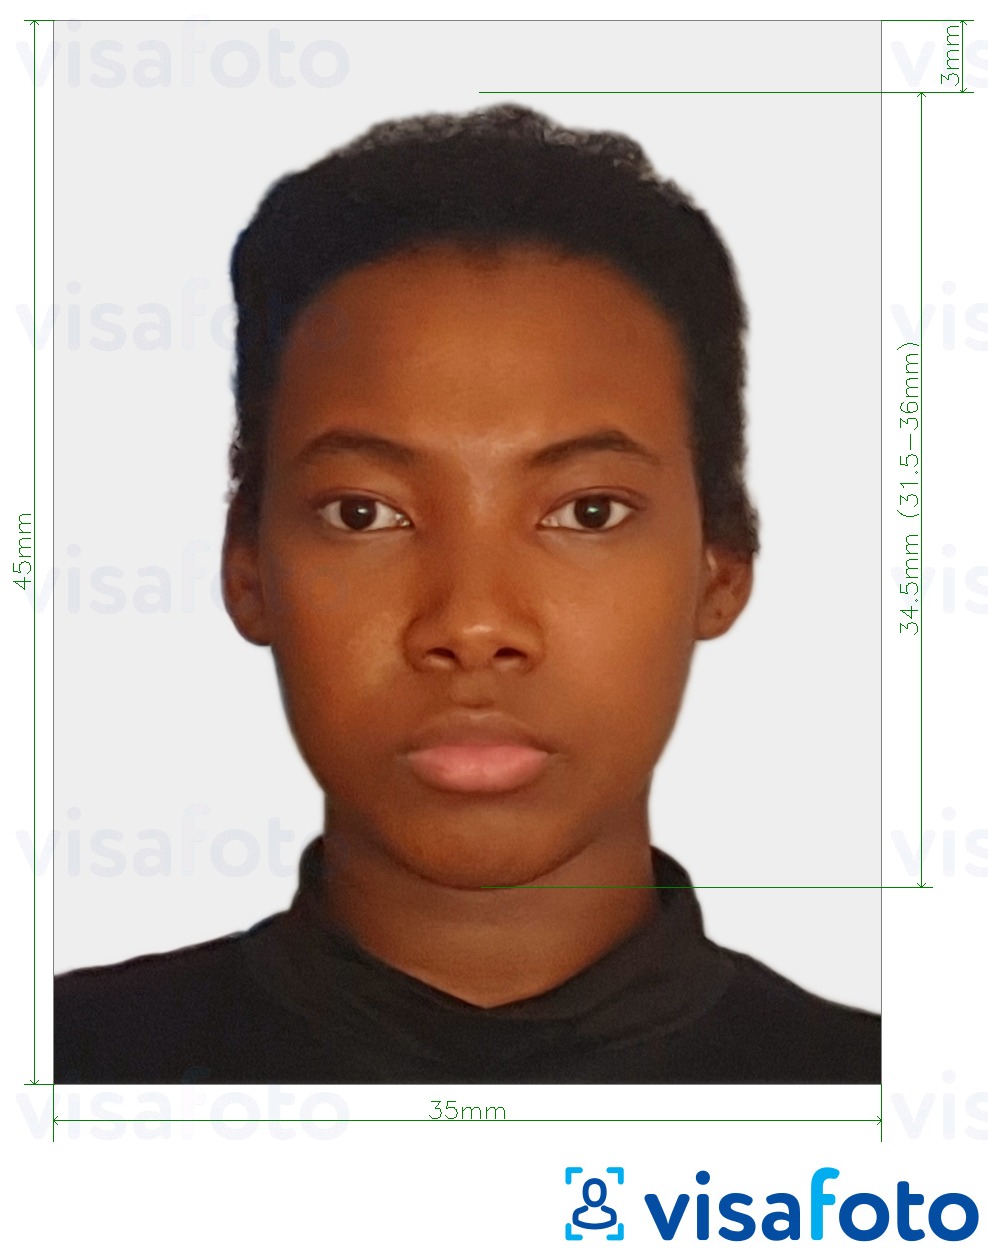 Példa a Suriname útlevél 45x35 mm (1,77x1,37 hüvelyk) fényképre pontos méret meghatározással